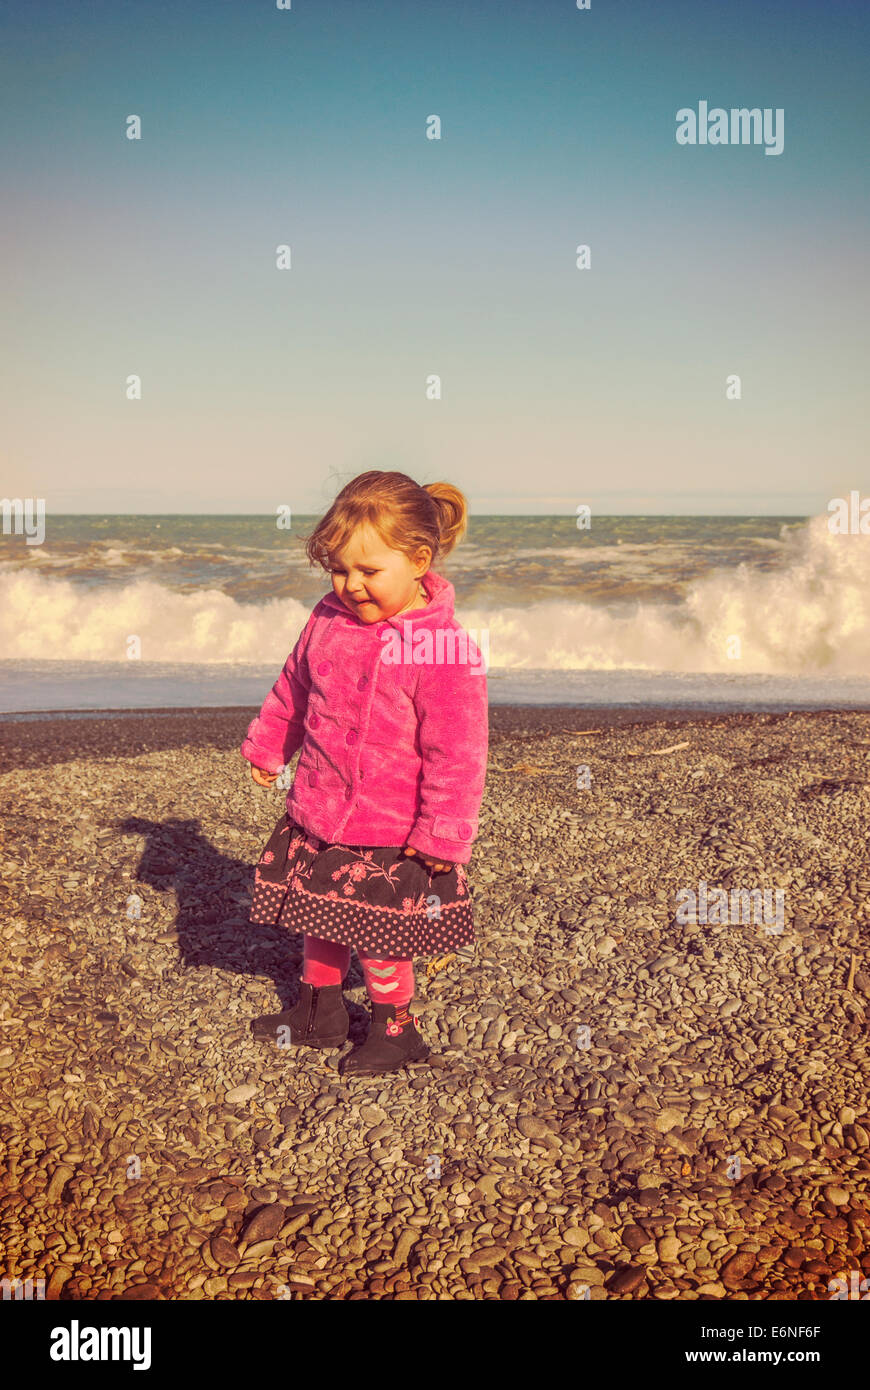 Kleines Mädchen 2 Jahre alt, alle verkleidet in ein rosa Fell Jacke an  einem Winter-Strand mit Instagram-Filter Stockfotografie - Alamy